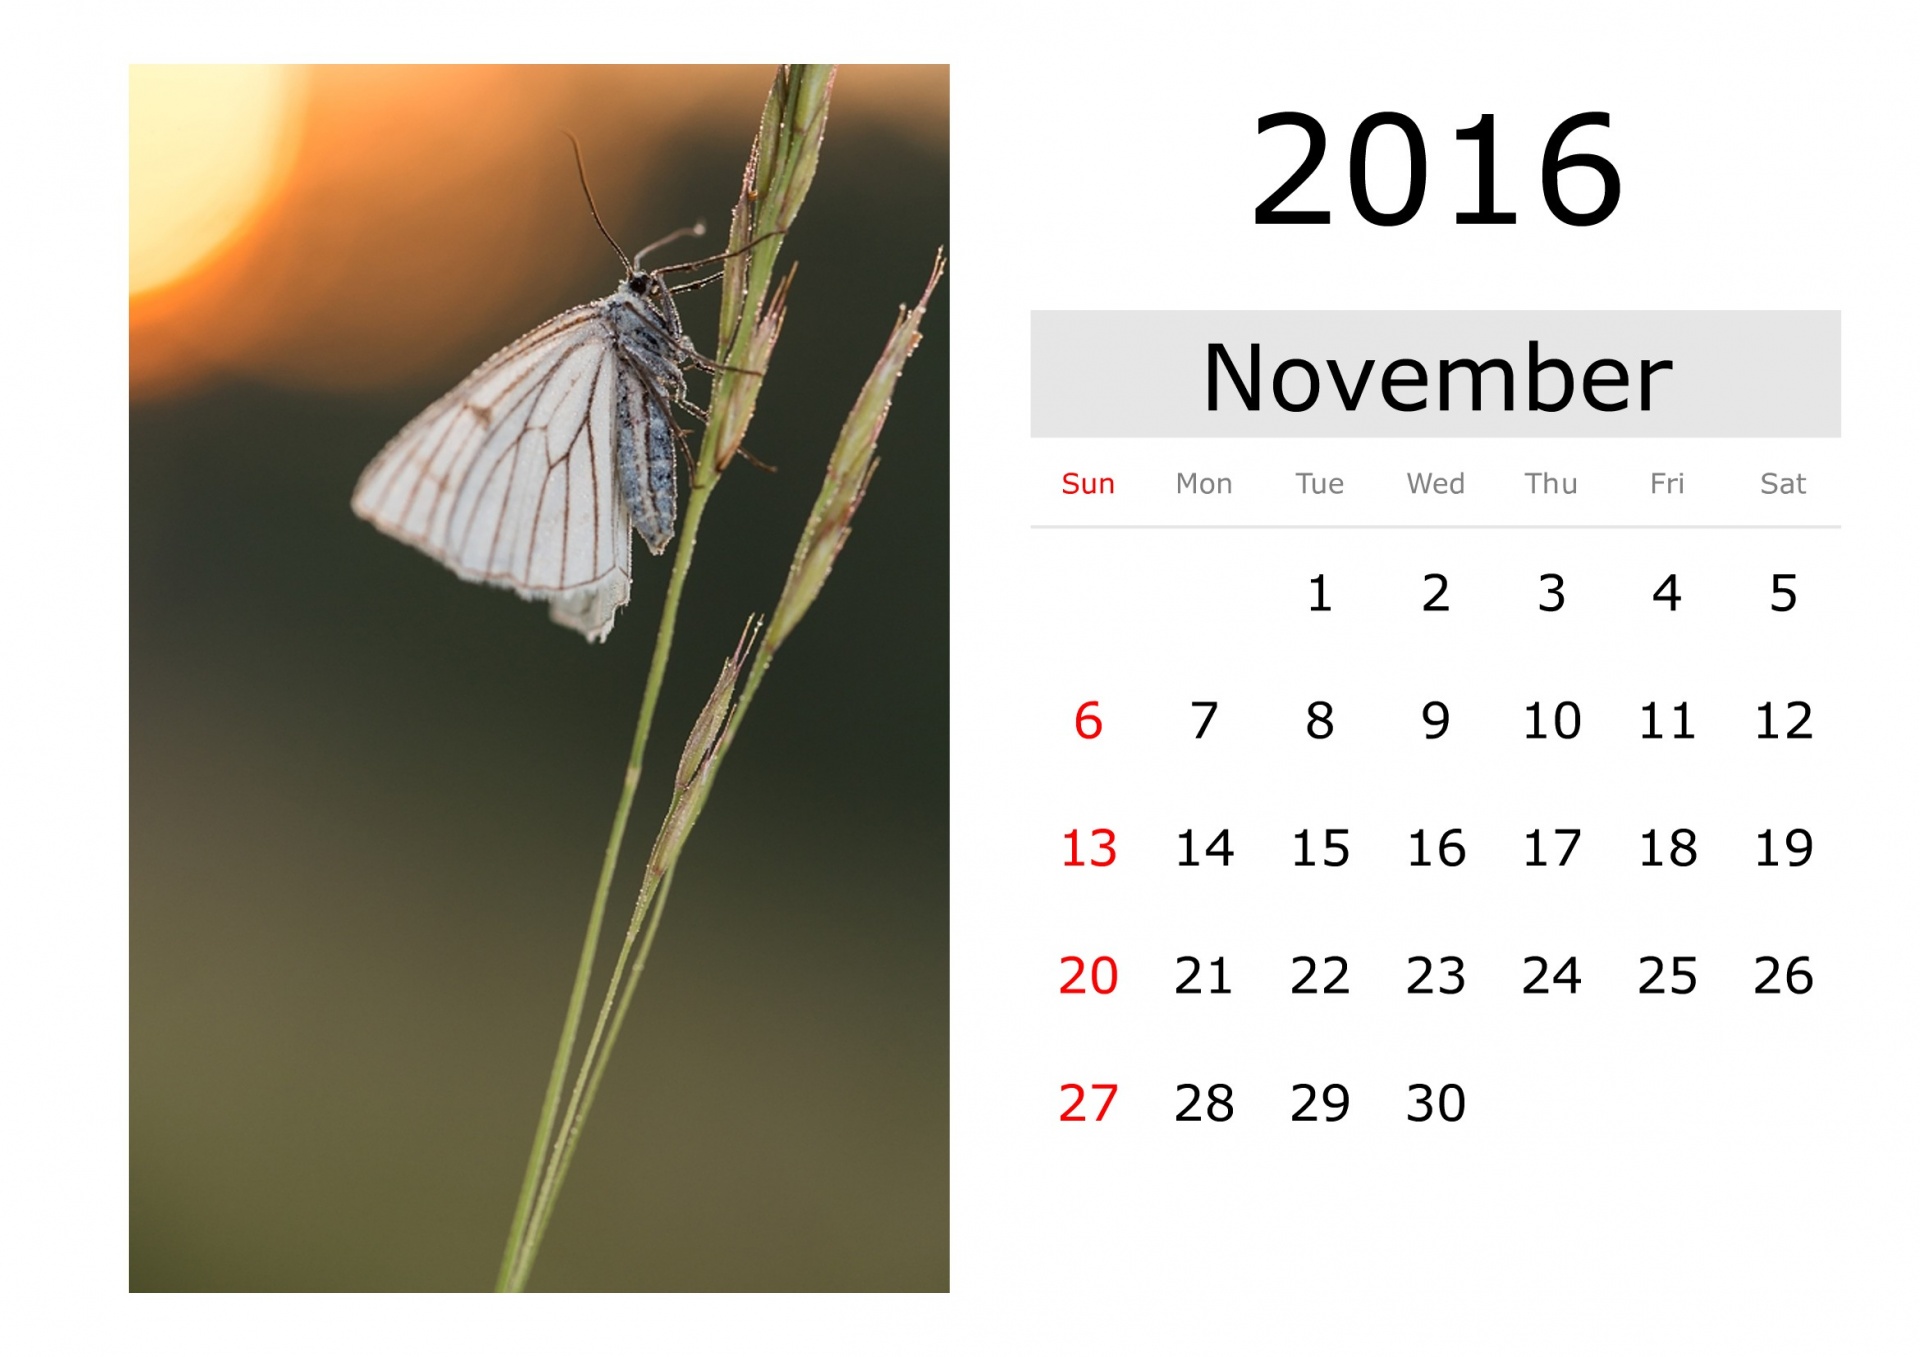 Calendar - November 2016 (English)